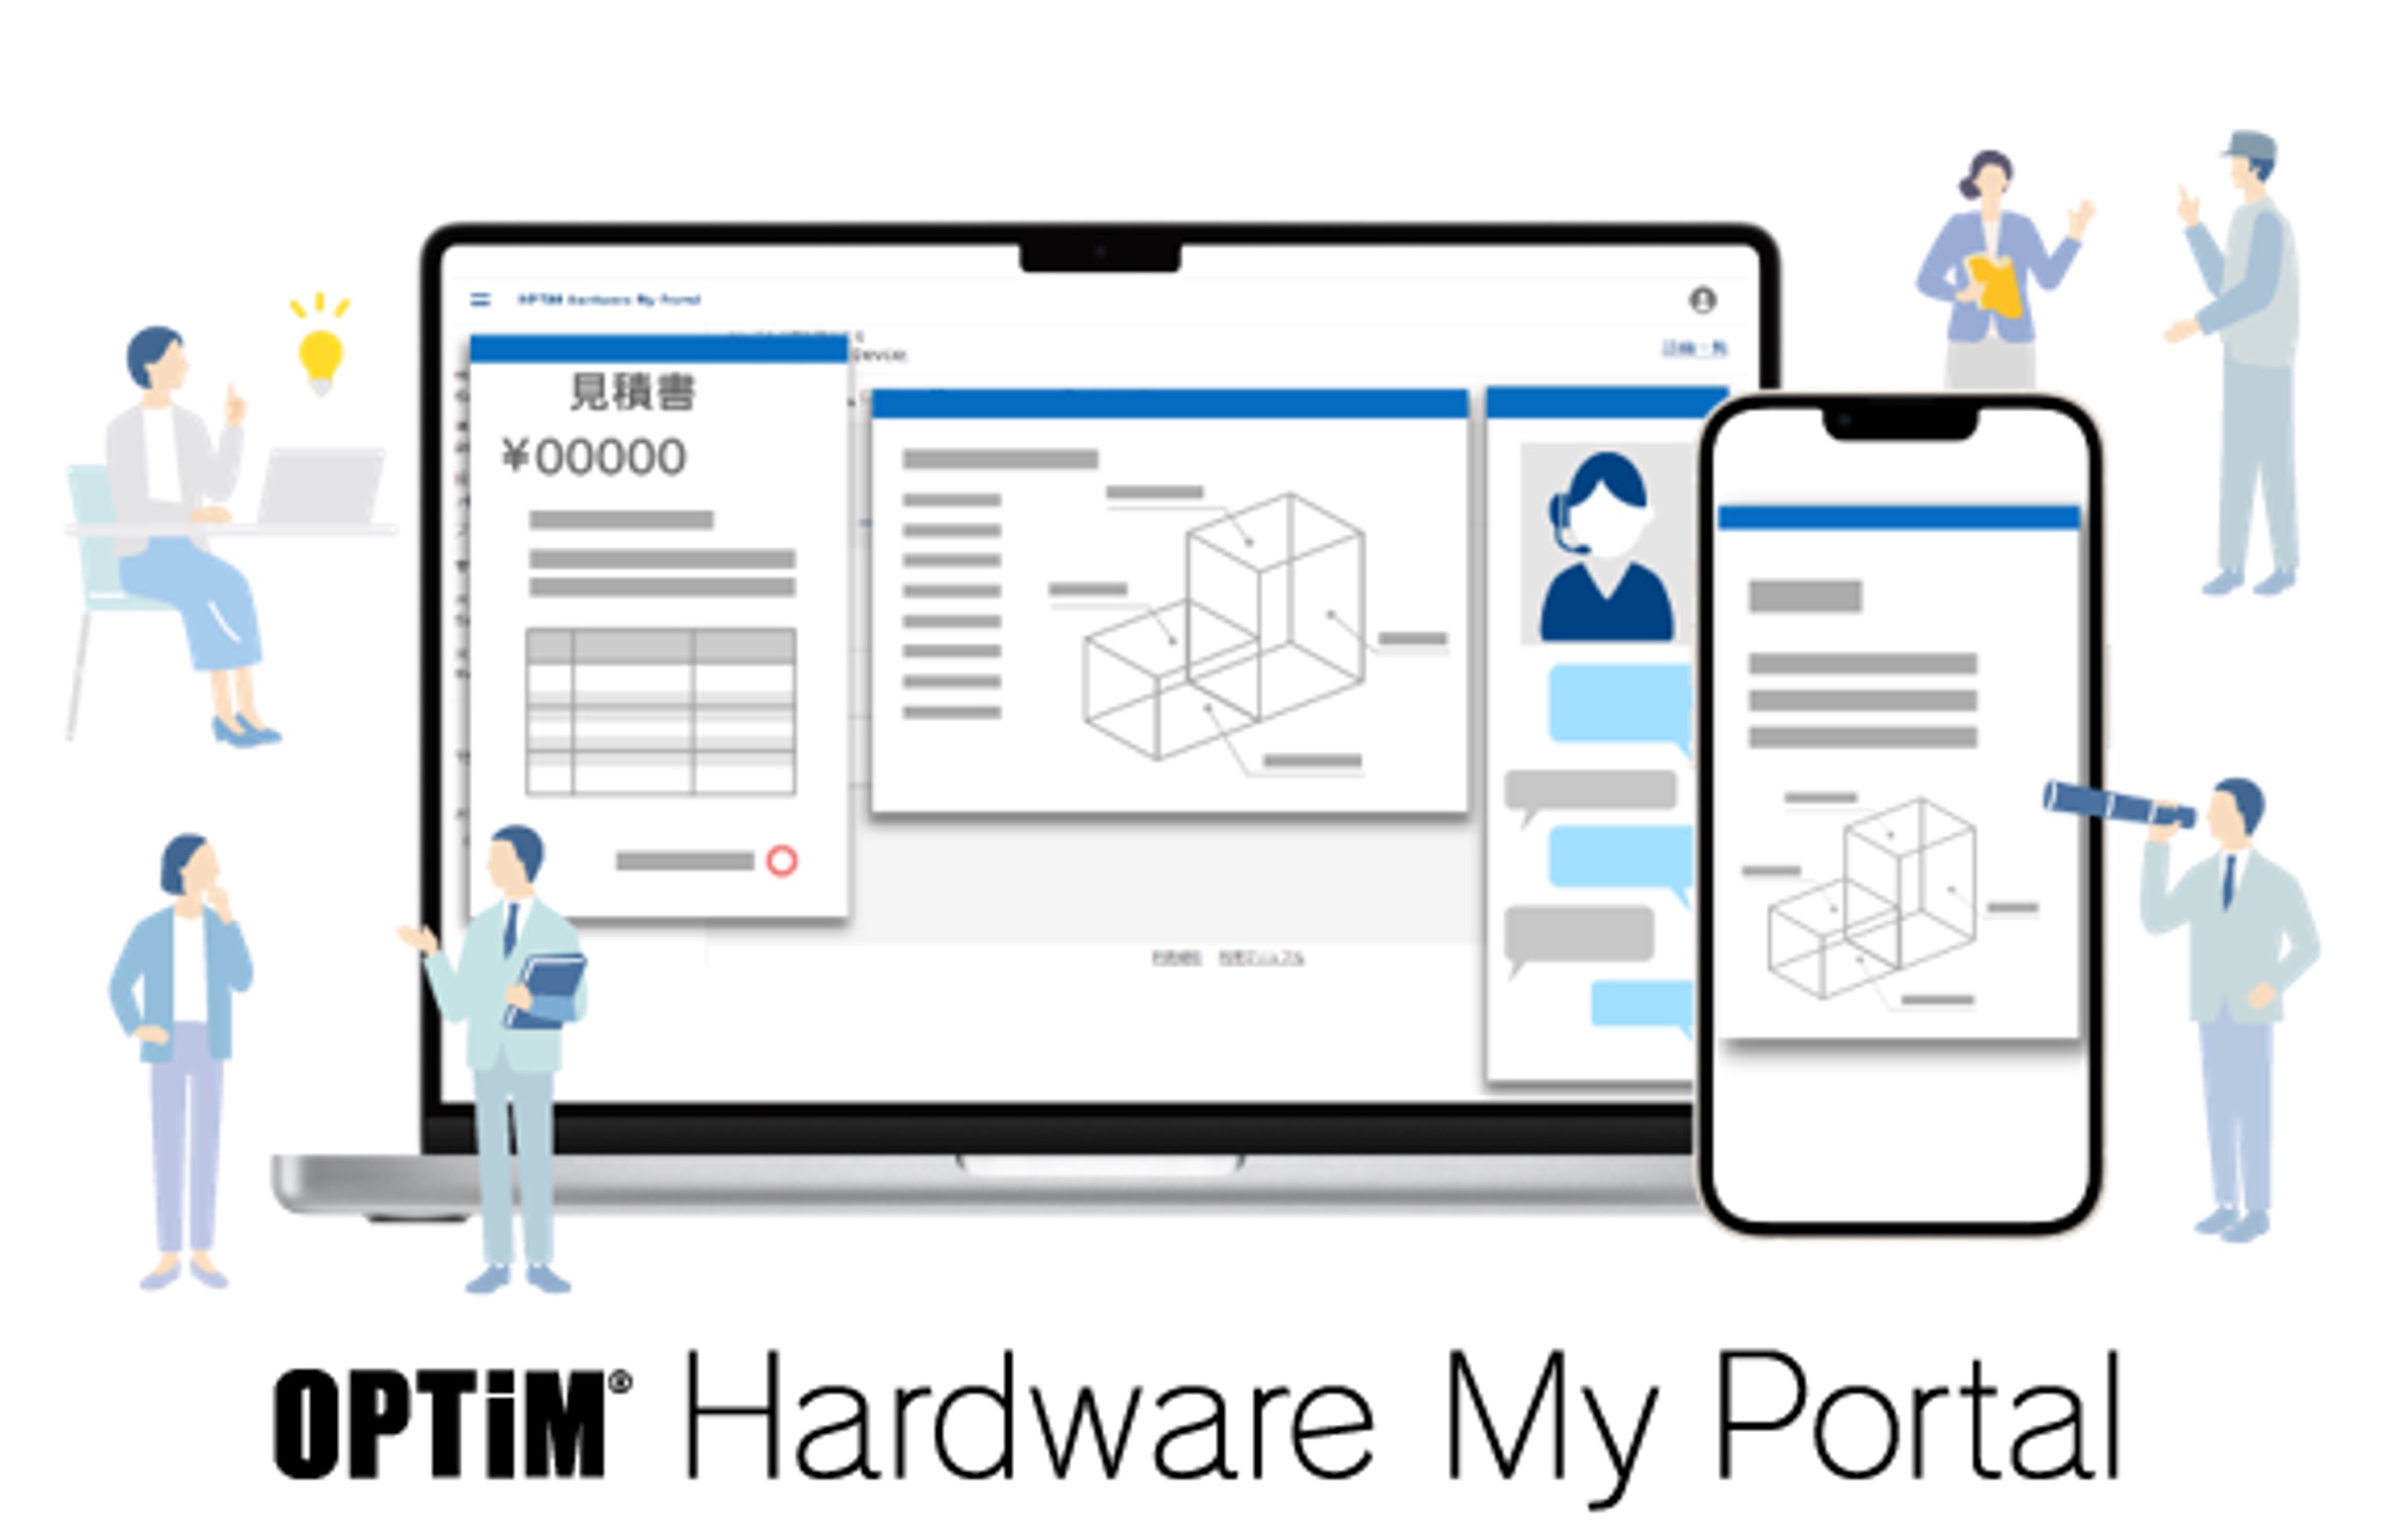 OPTiM Hardware My Portal アイキャッチイメージ